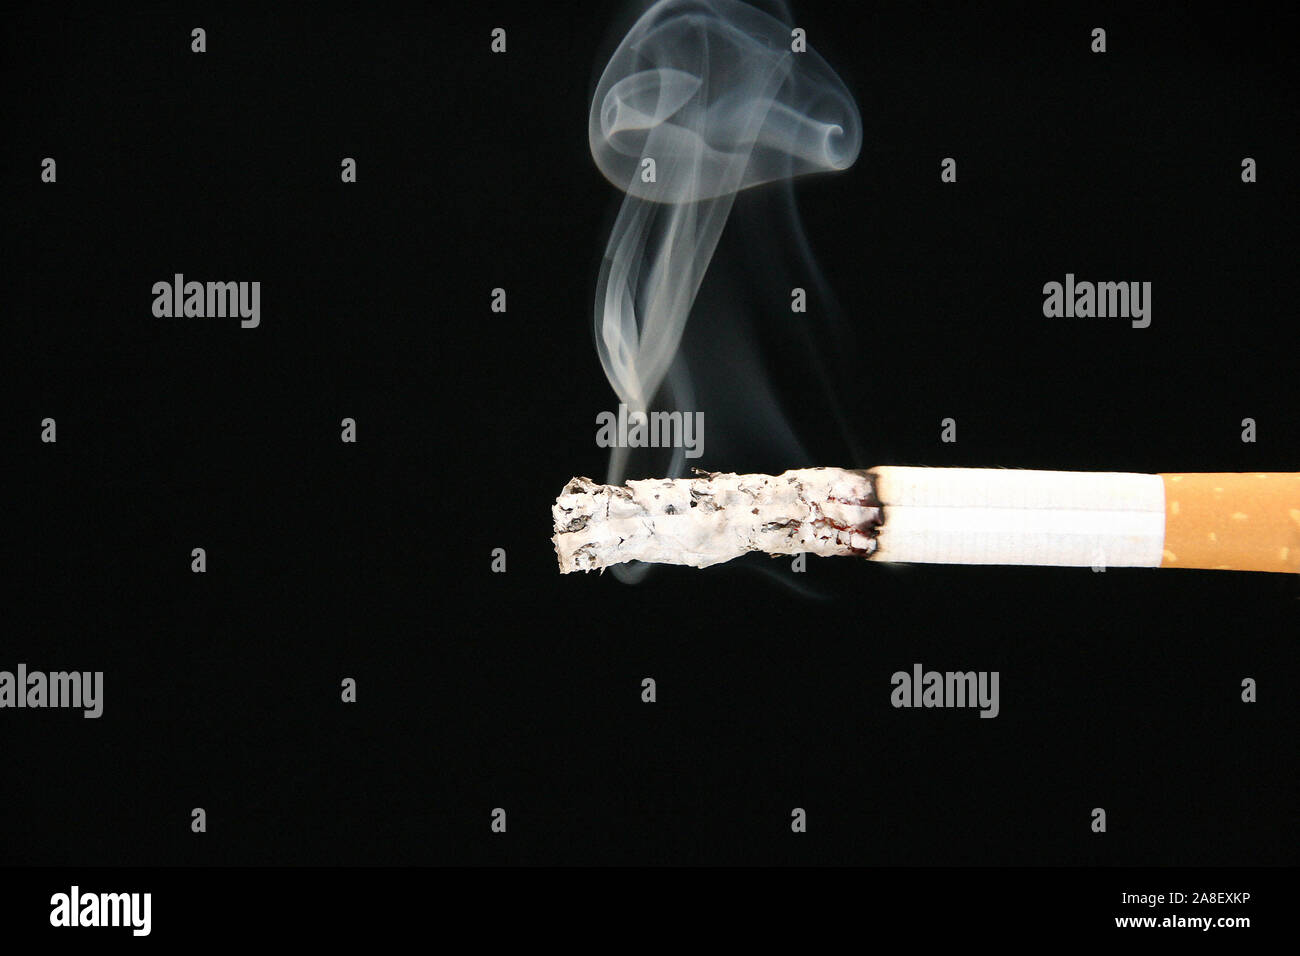 https://c8.alamy.com/comp/2A8EXKP/brennende-zigarette-qualm-rauchschwaden-nikotin-giftig-gesundheitsschdlich-teer-2A8EXKP.jpg